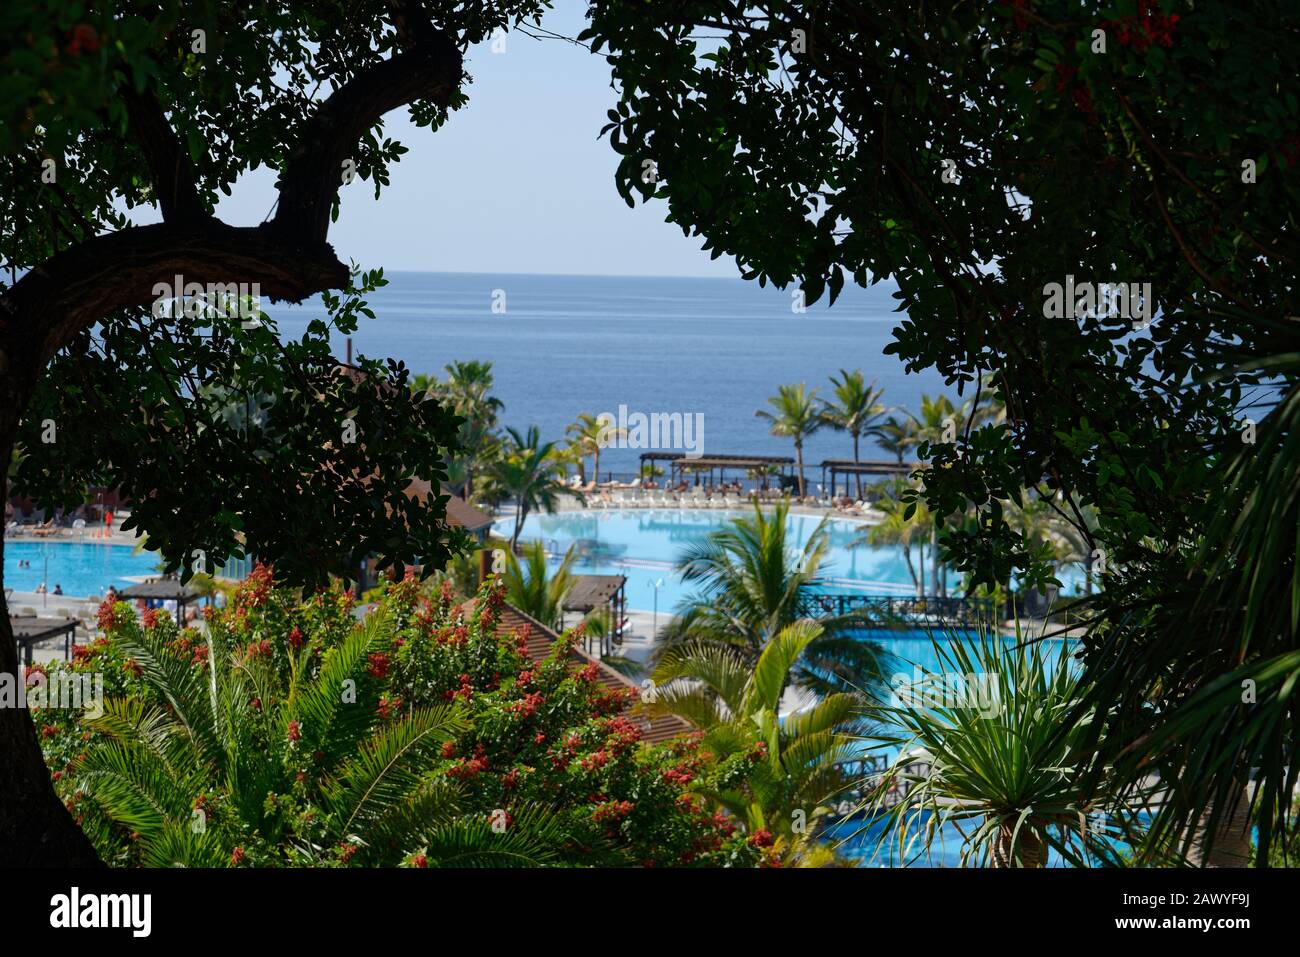 Imagen general del resort de vacaciones. Edificios del complejo, palmeras y piscina. Foto de stock